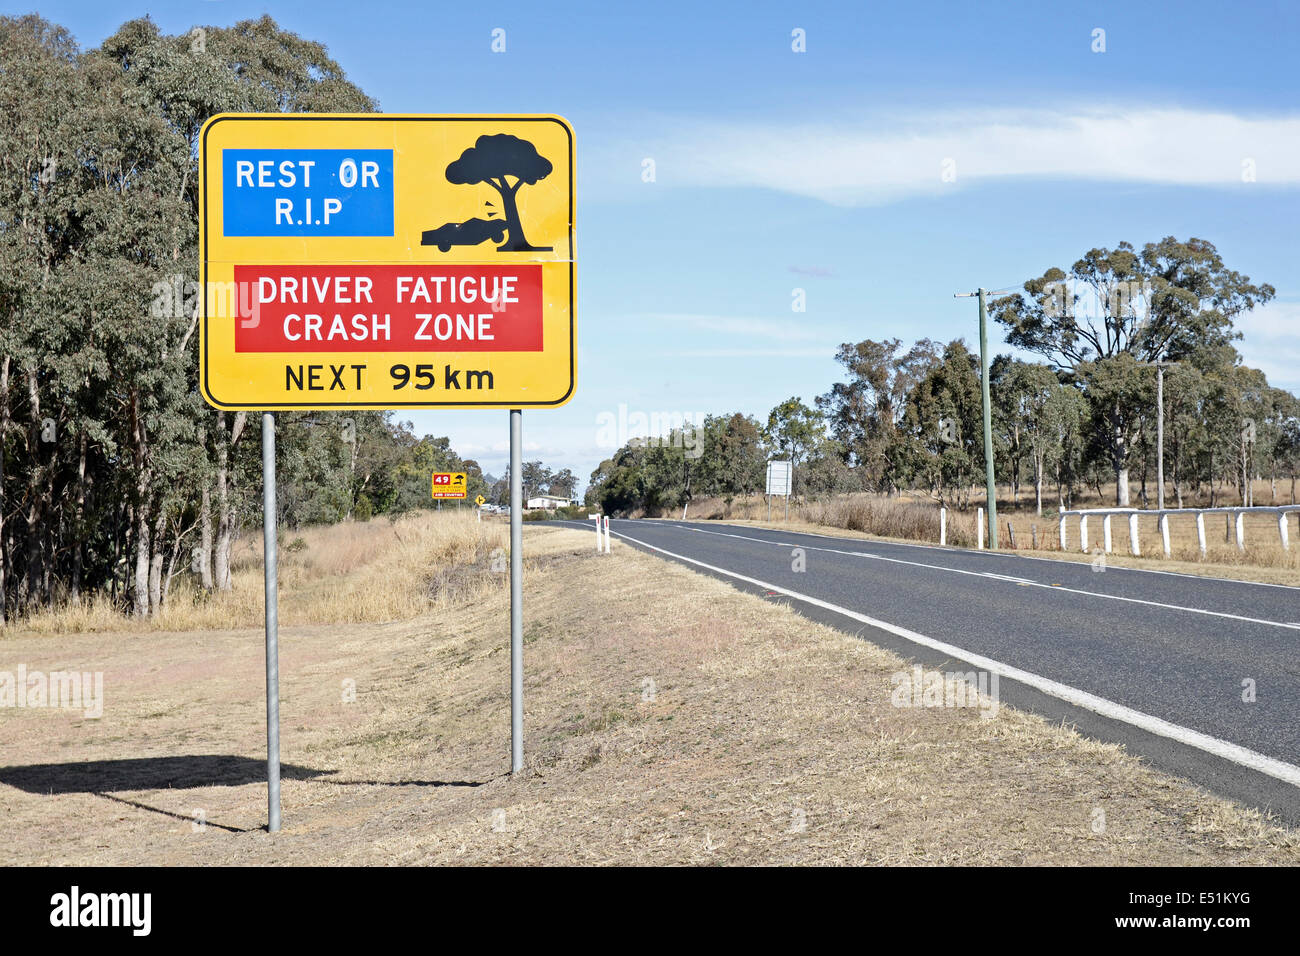 La fatigue au panneau d'avertissement près de Warwick Qld Australie Banque D'Images